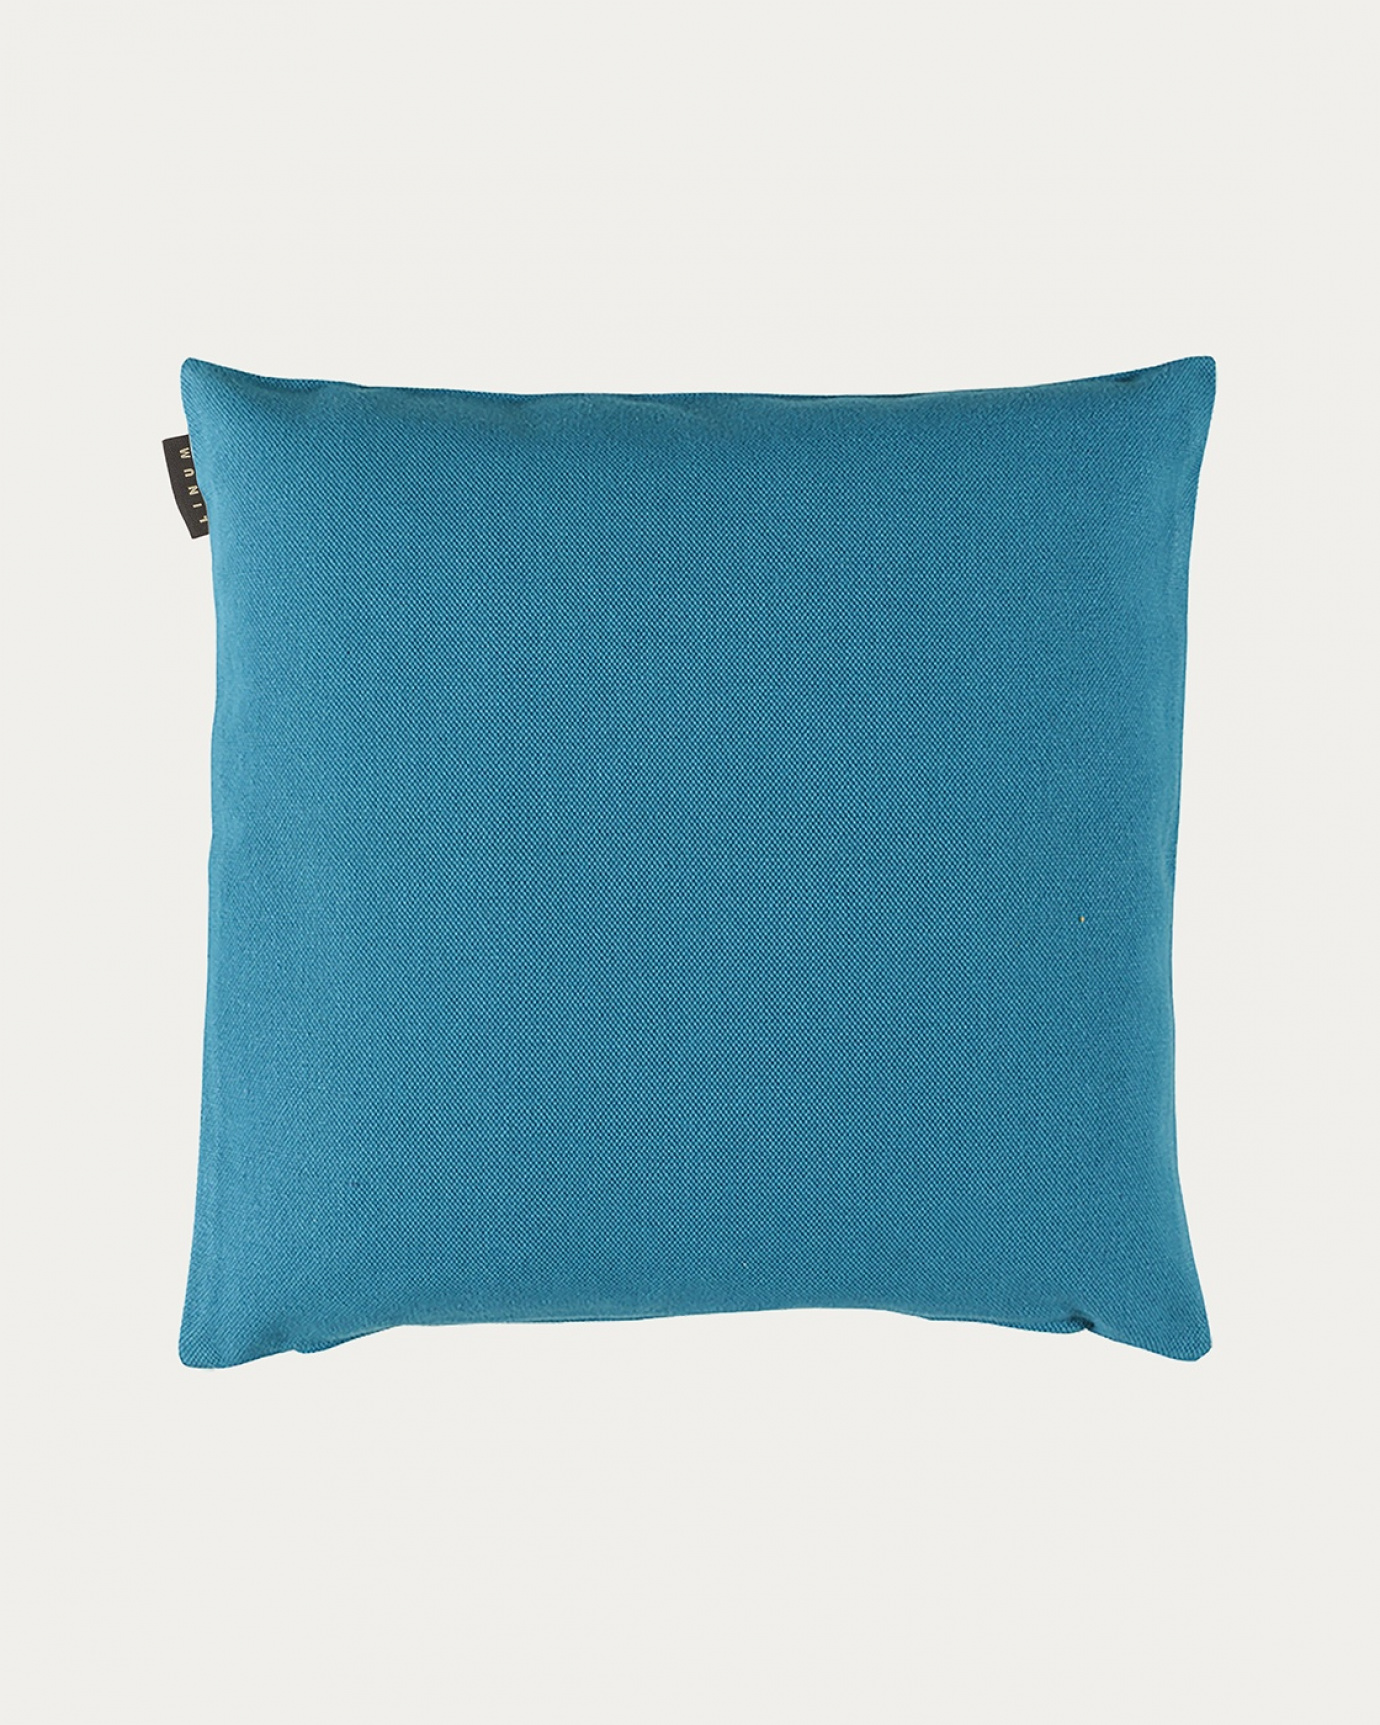 Image du produit housse de coussin PEPPER aqua turquoise en coton doux de LINUM DESIGN. Facile à laver et durable pendant des générations. Taille 50 x 50 cm.